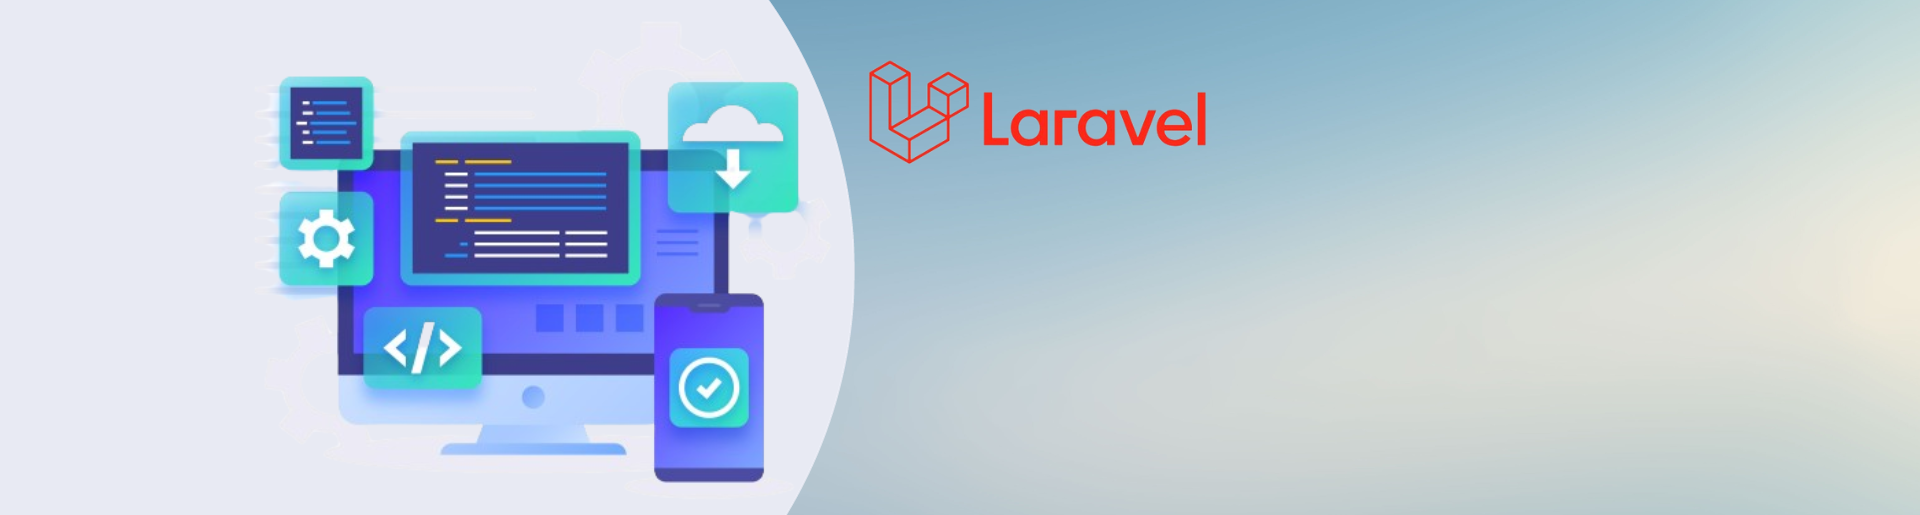 Hire Laravel Developer - Maven Infotech